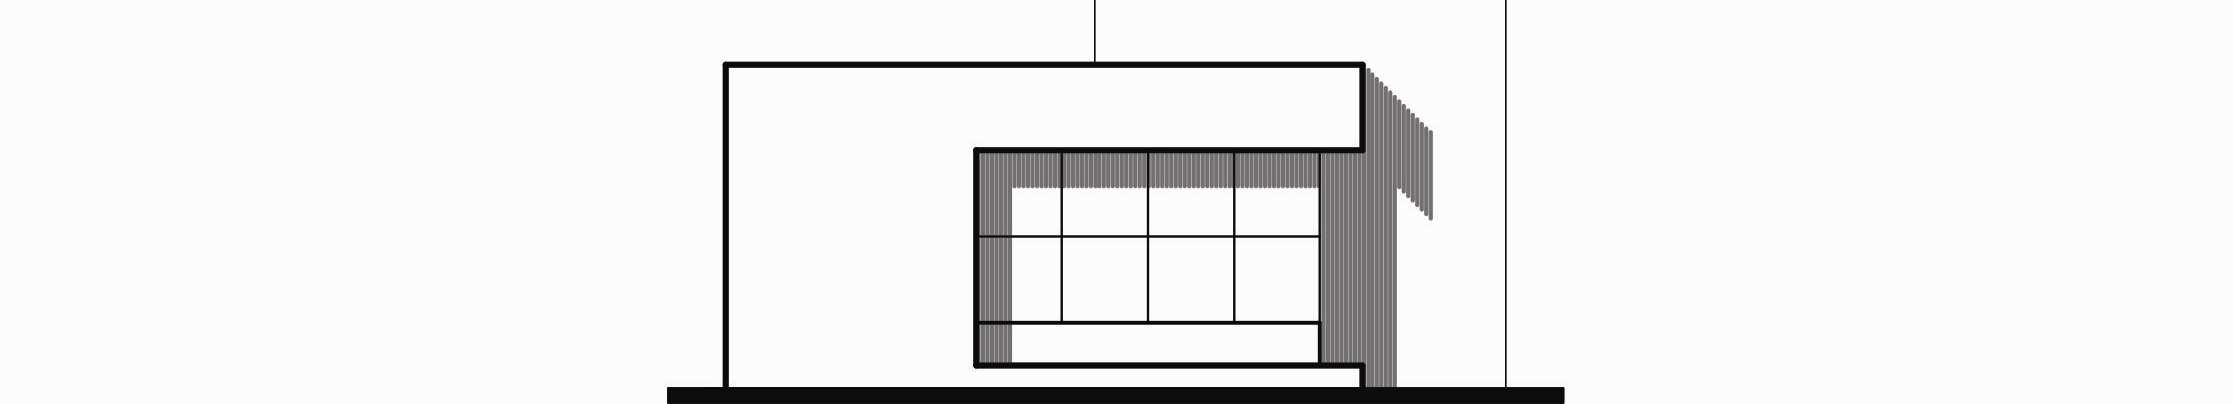 ELEVAÇÕES OU FACHADAS 1- CONCEITUAÇÃO Elevações ou fachadas são elementos gráficos componentes de um projeto de arquitetura, constituídos pela projeção das arestas visíveis do volume sobre um plano